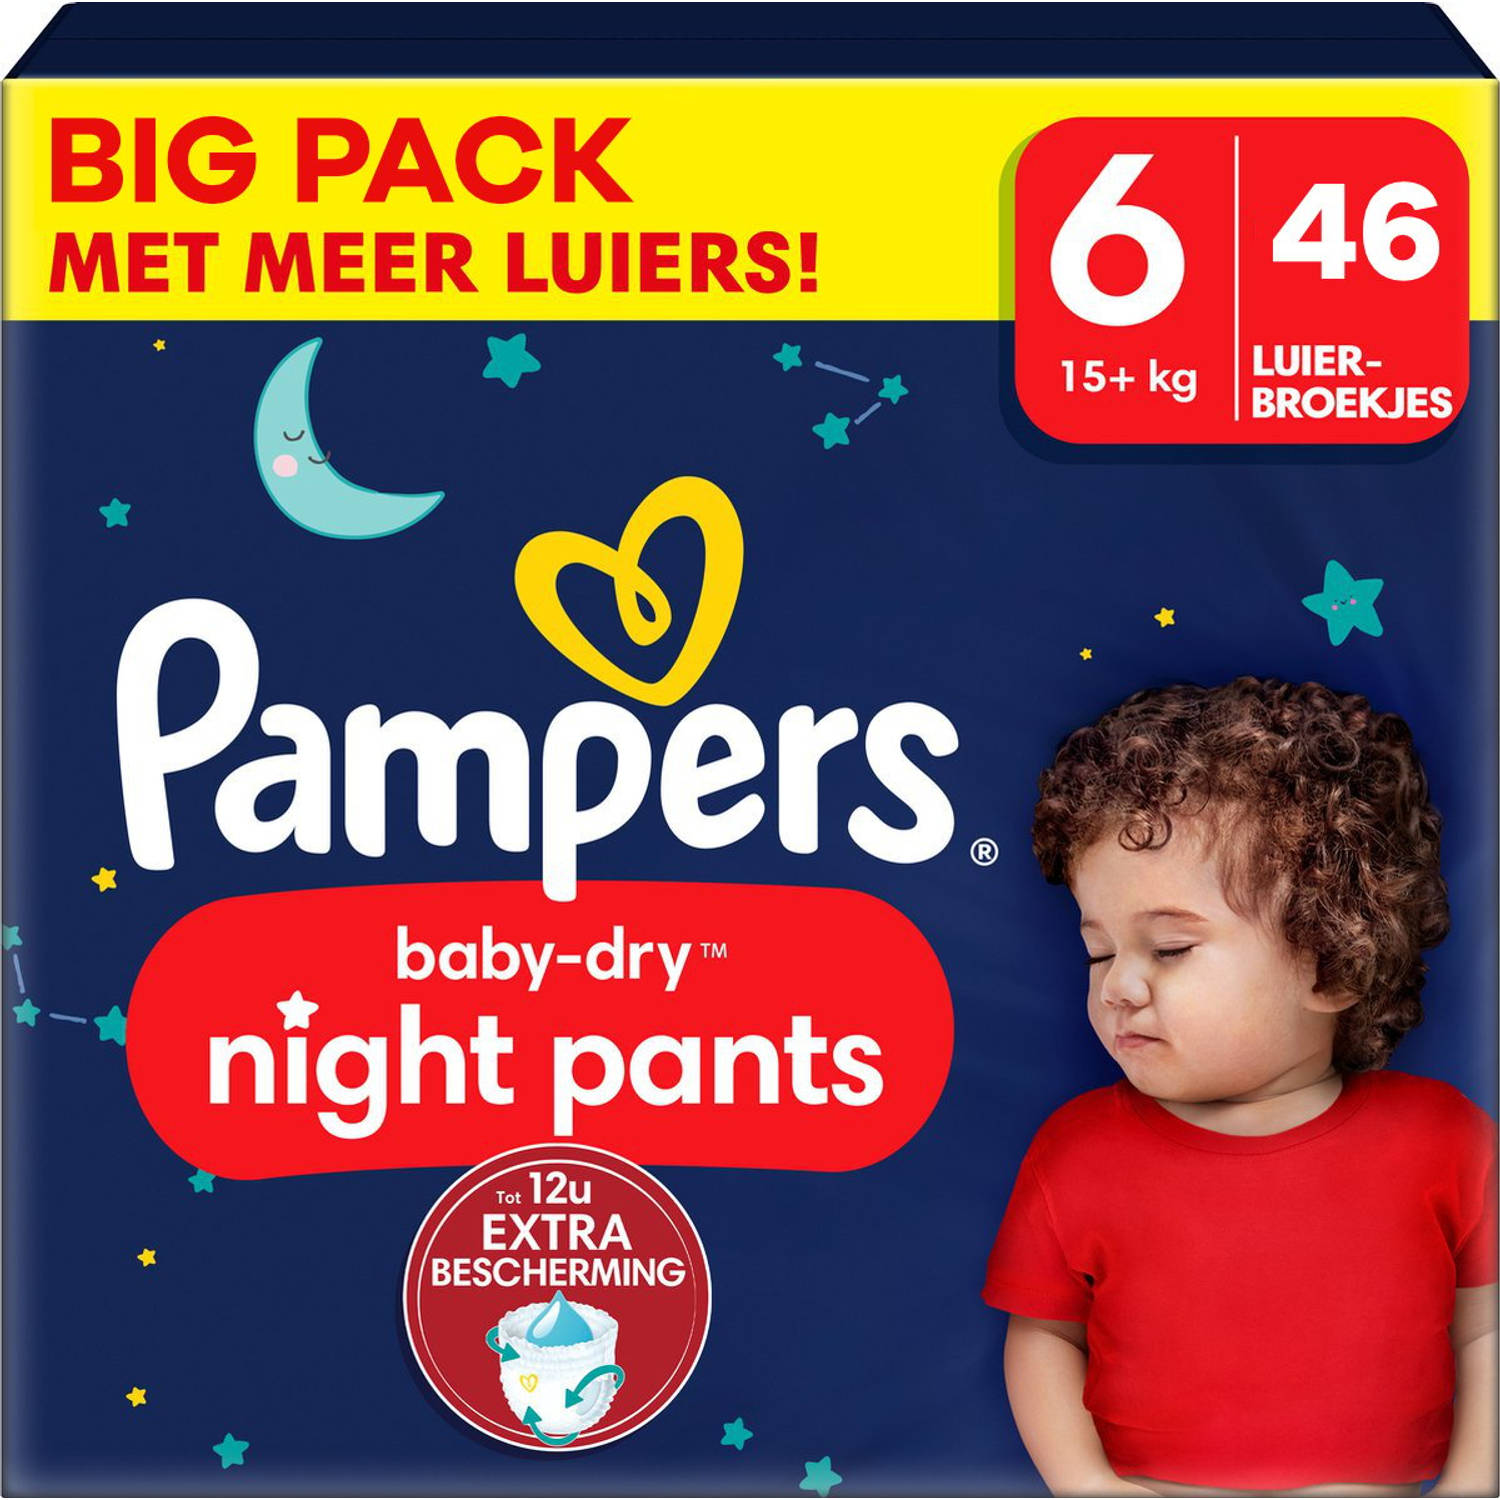 Pampers Baby Dry Night Pants Maat 6 Big Pack 46 luierbroekjes